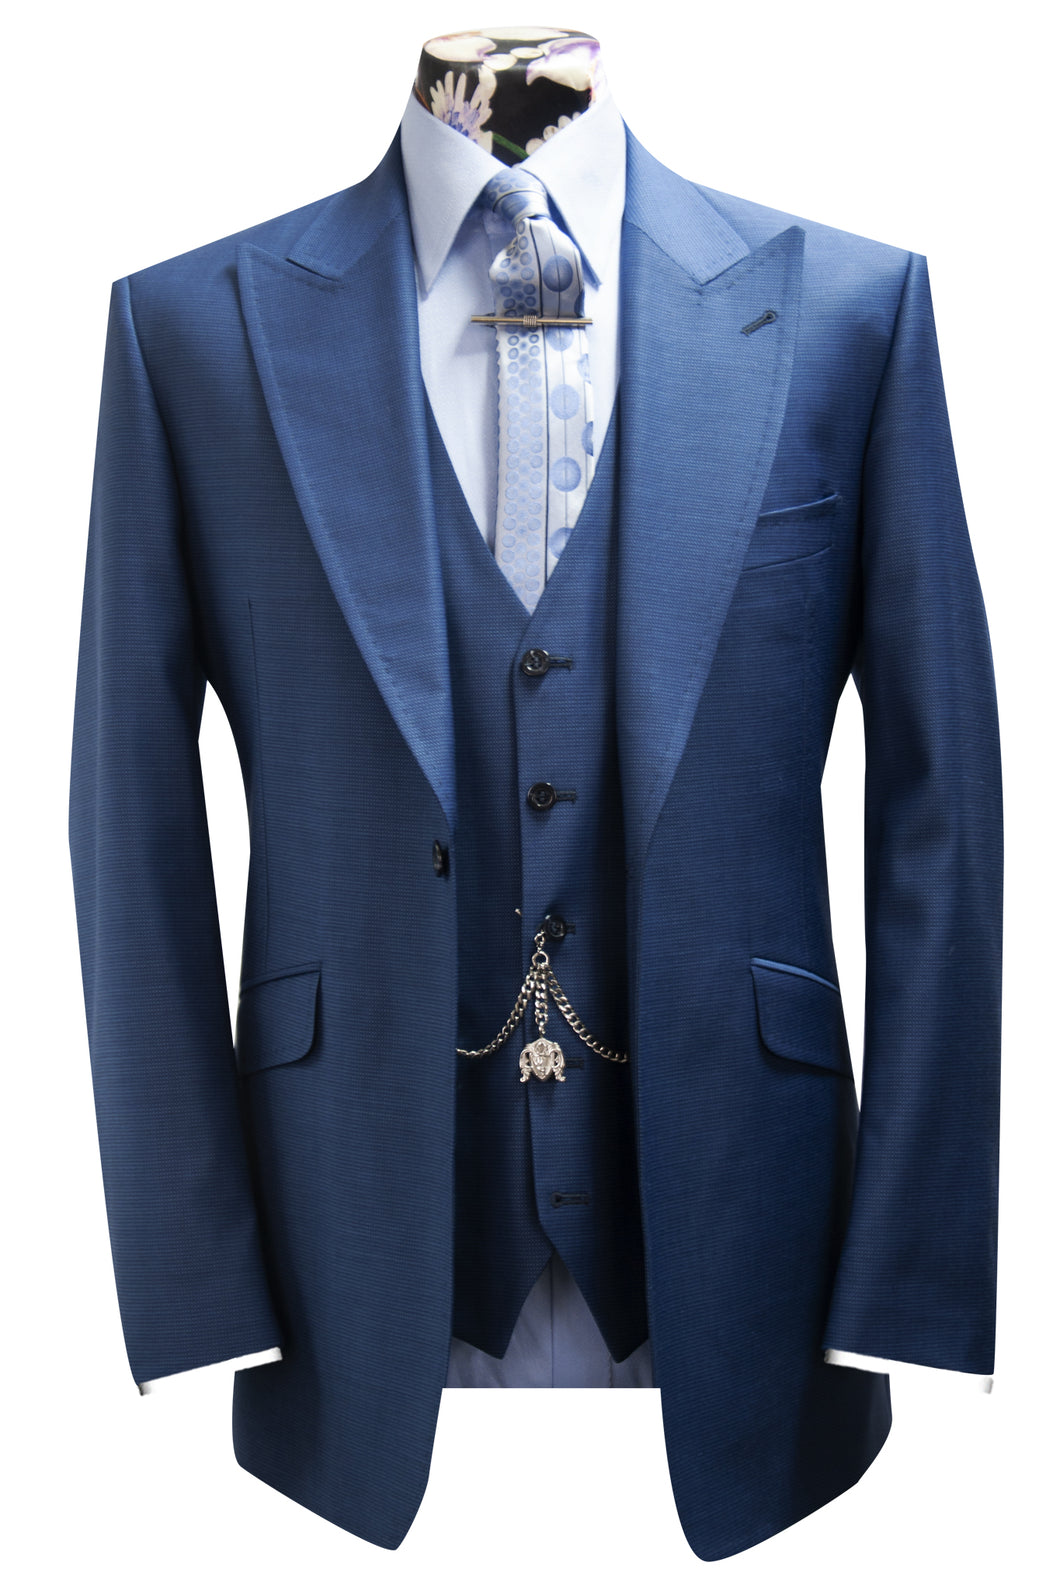 The Clinton Cobalt Blue Suit